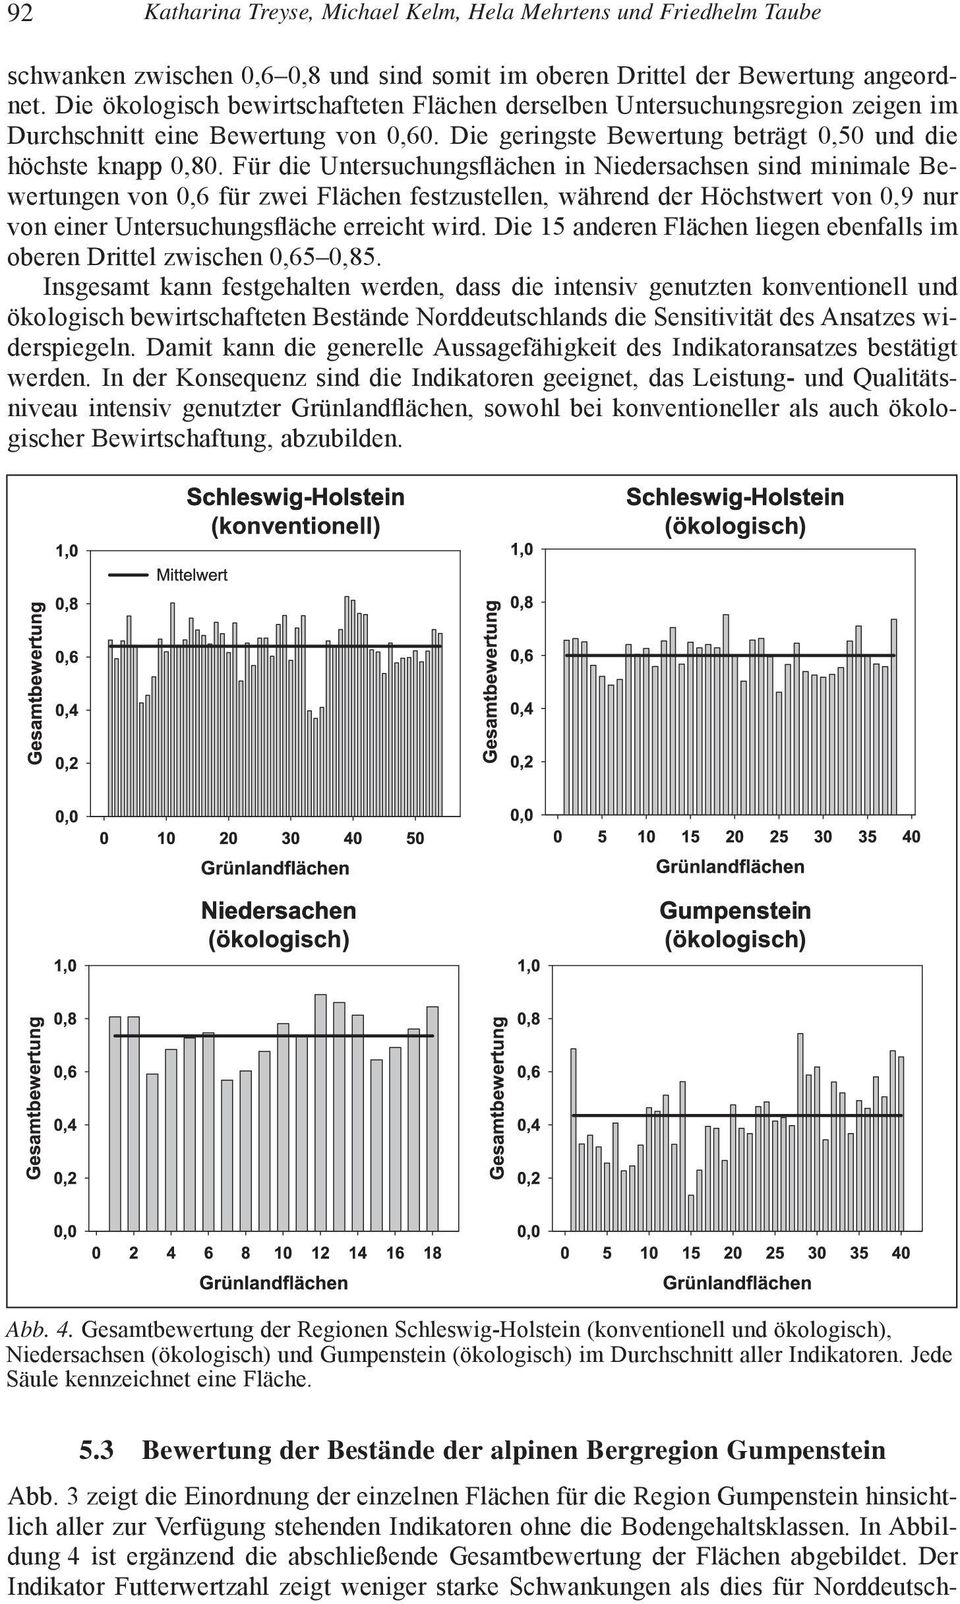 Für die Untersuchungsflächen in Niedersachsen sind minimale Bewertungen von 0,6 für zwei Flächen festzustellen, während der Höchstwert von 0,9 nur von einer Untersuchungsfläche erreicht wird.